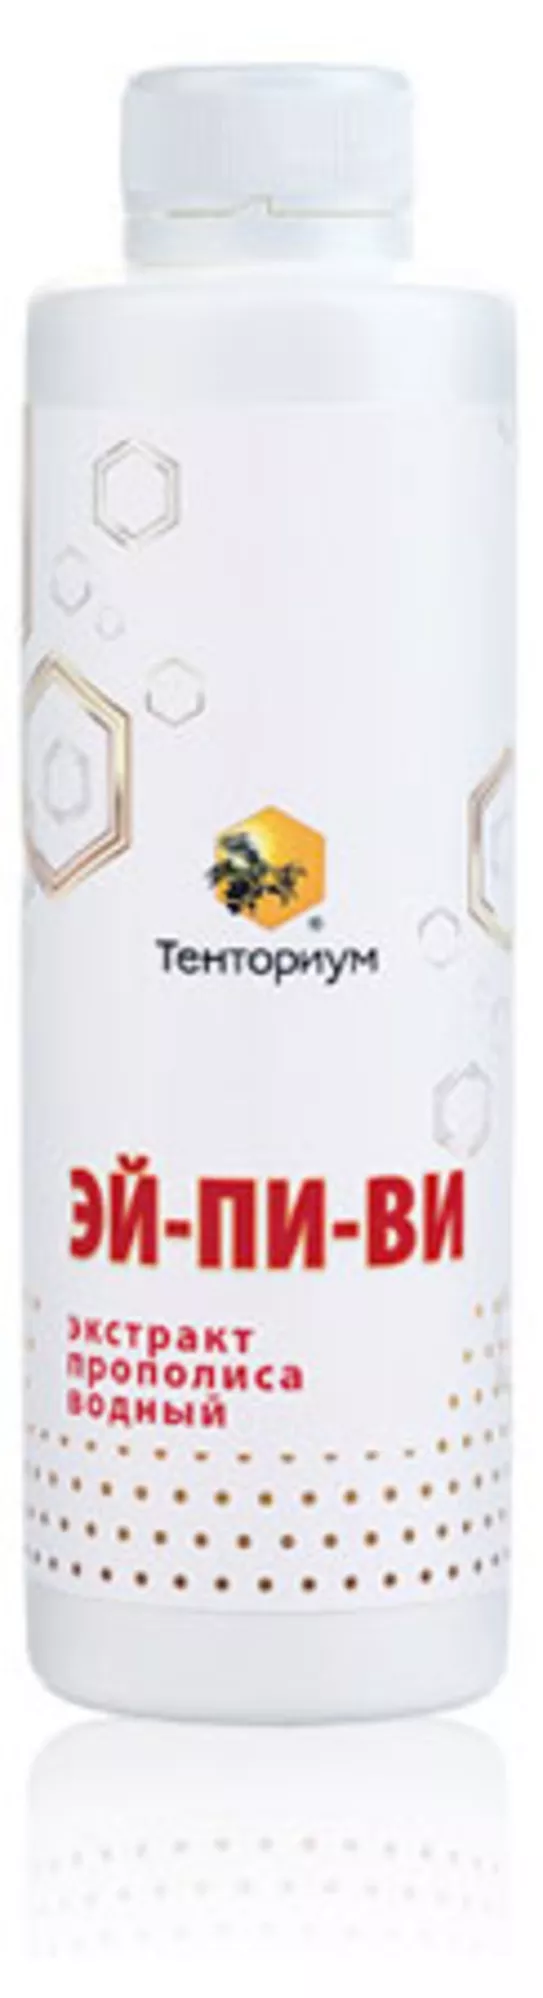 Официальное представительство компании Тенториум в Алматы 8